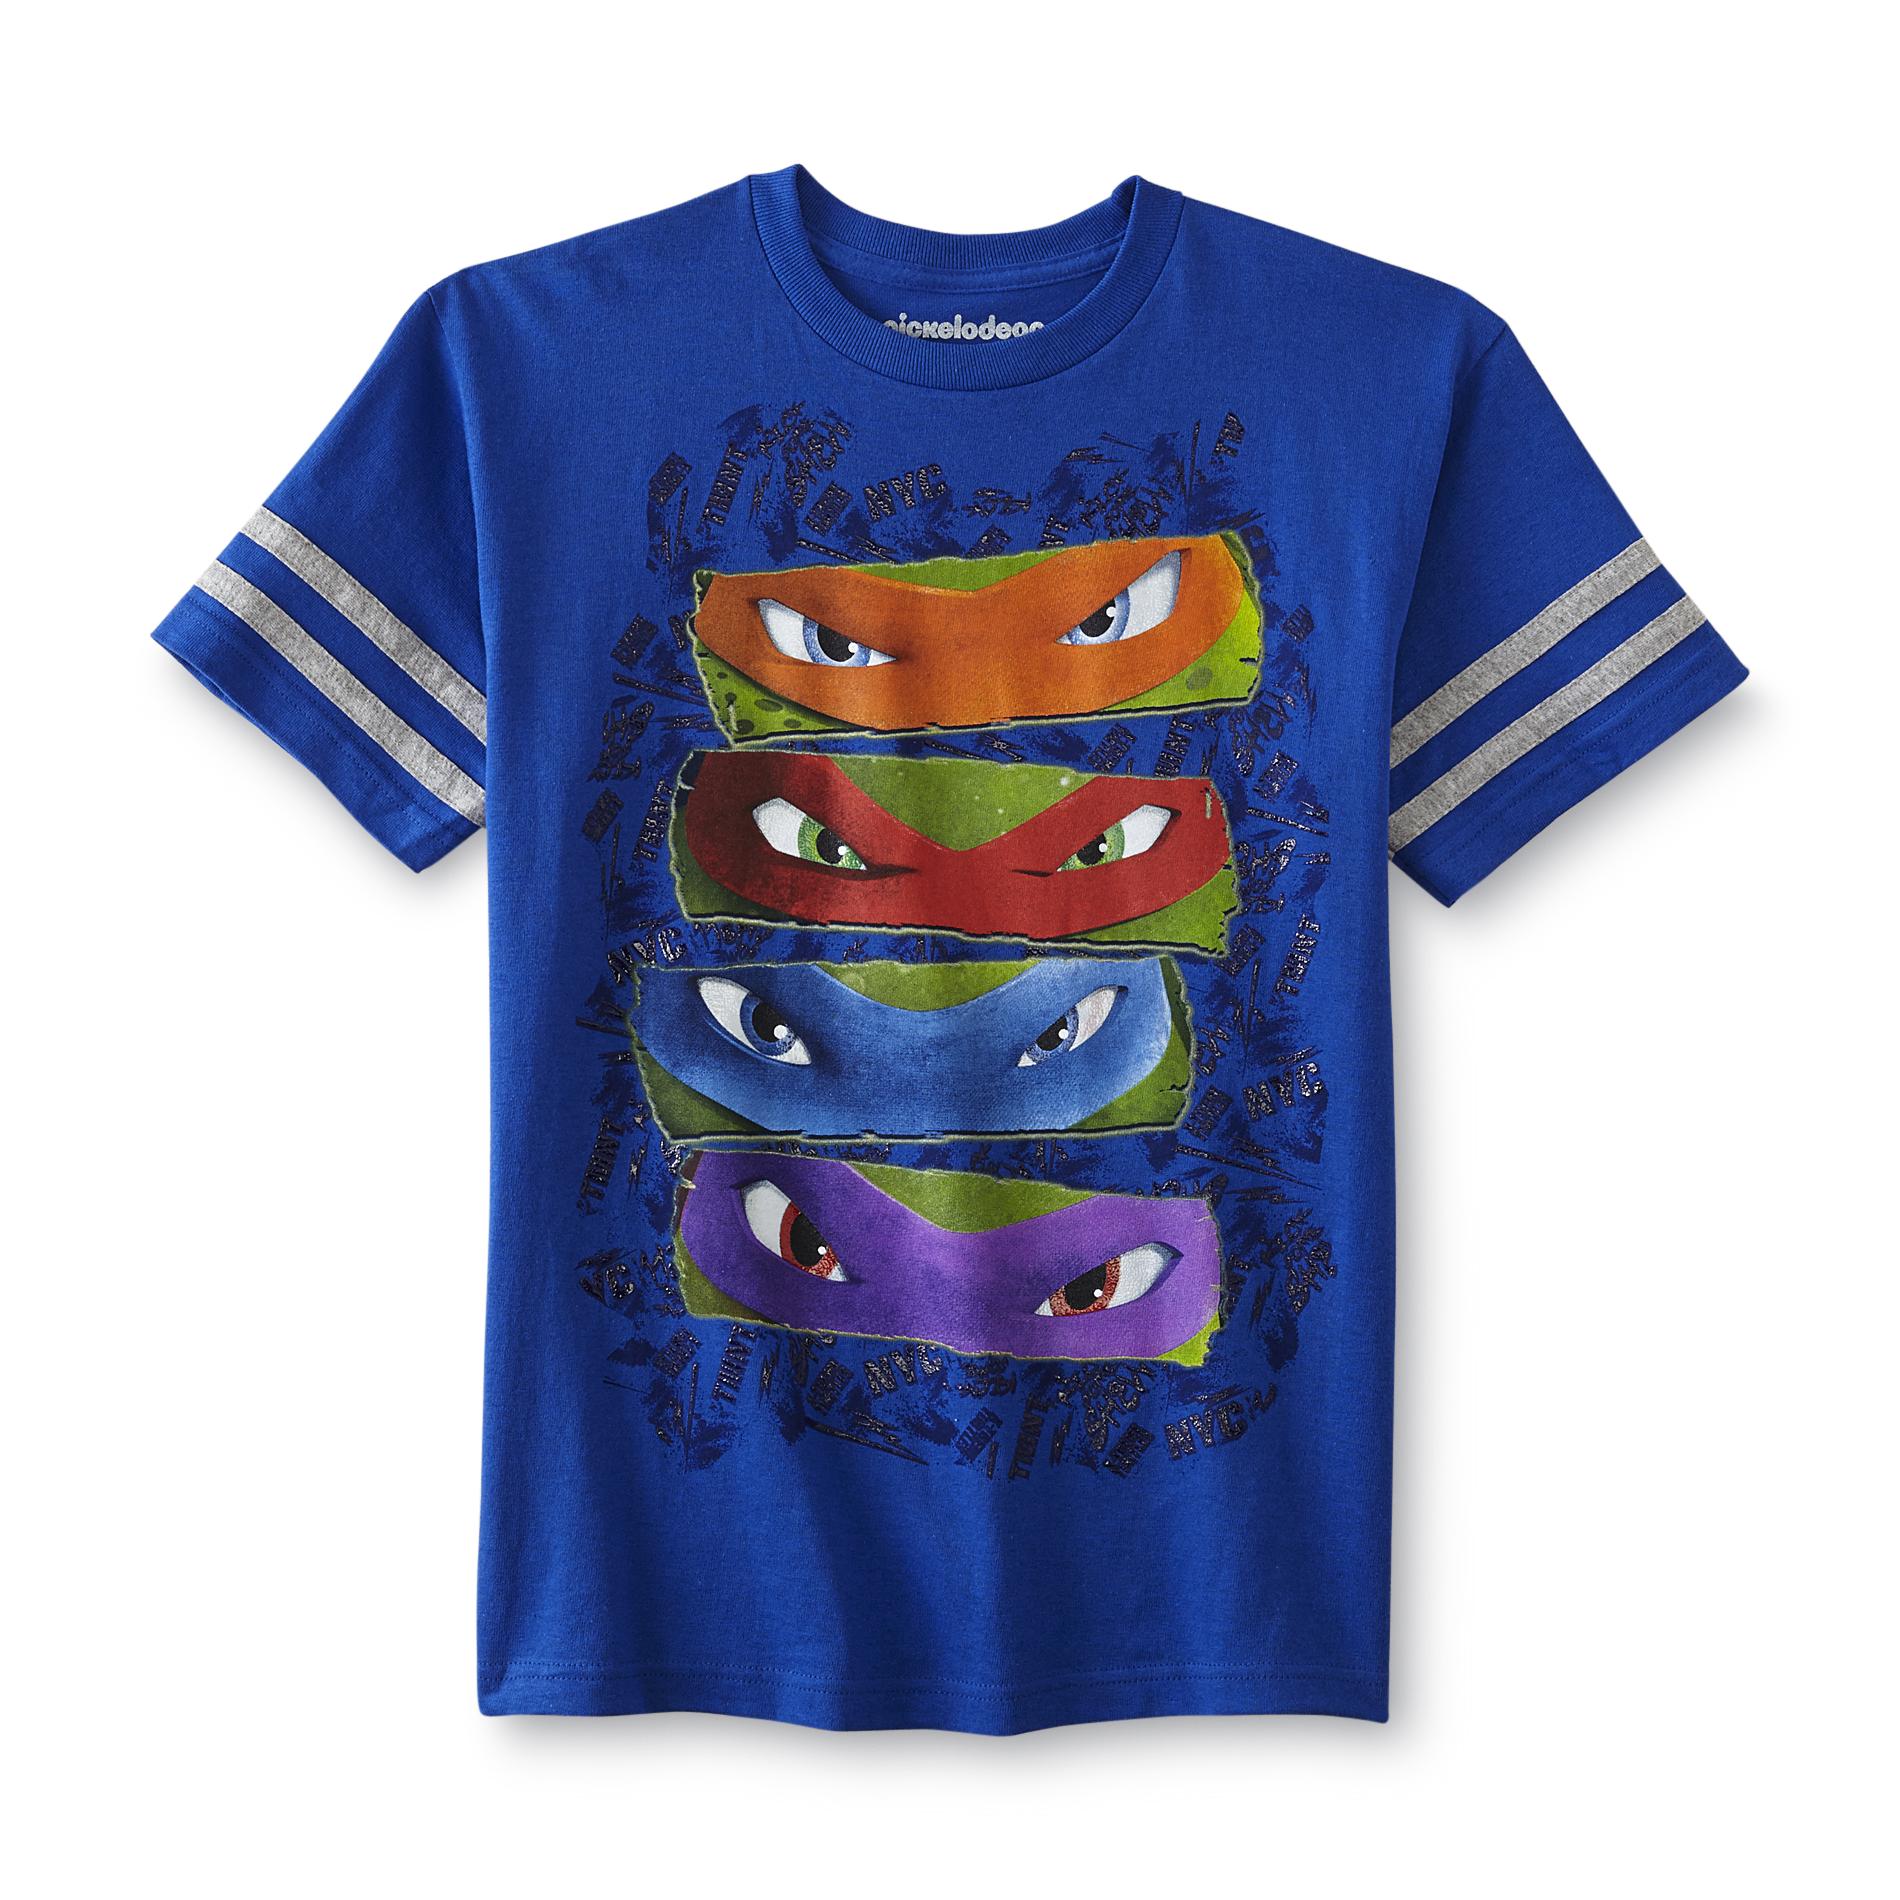 Nickelodeon Teenage Mutant Ninja Turtles Boy's Graphic T-shirt